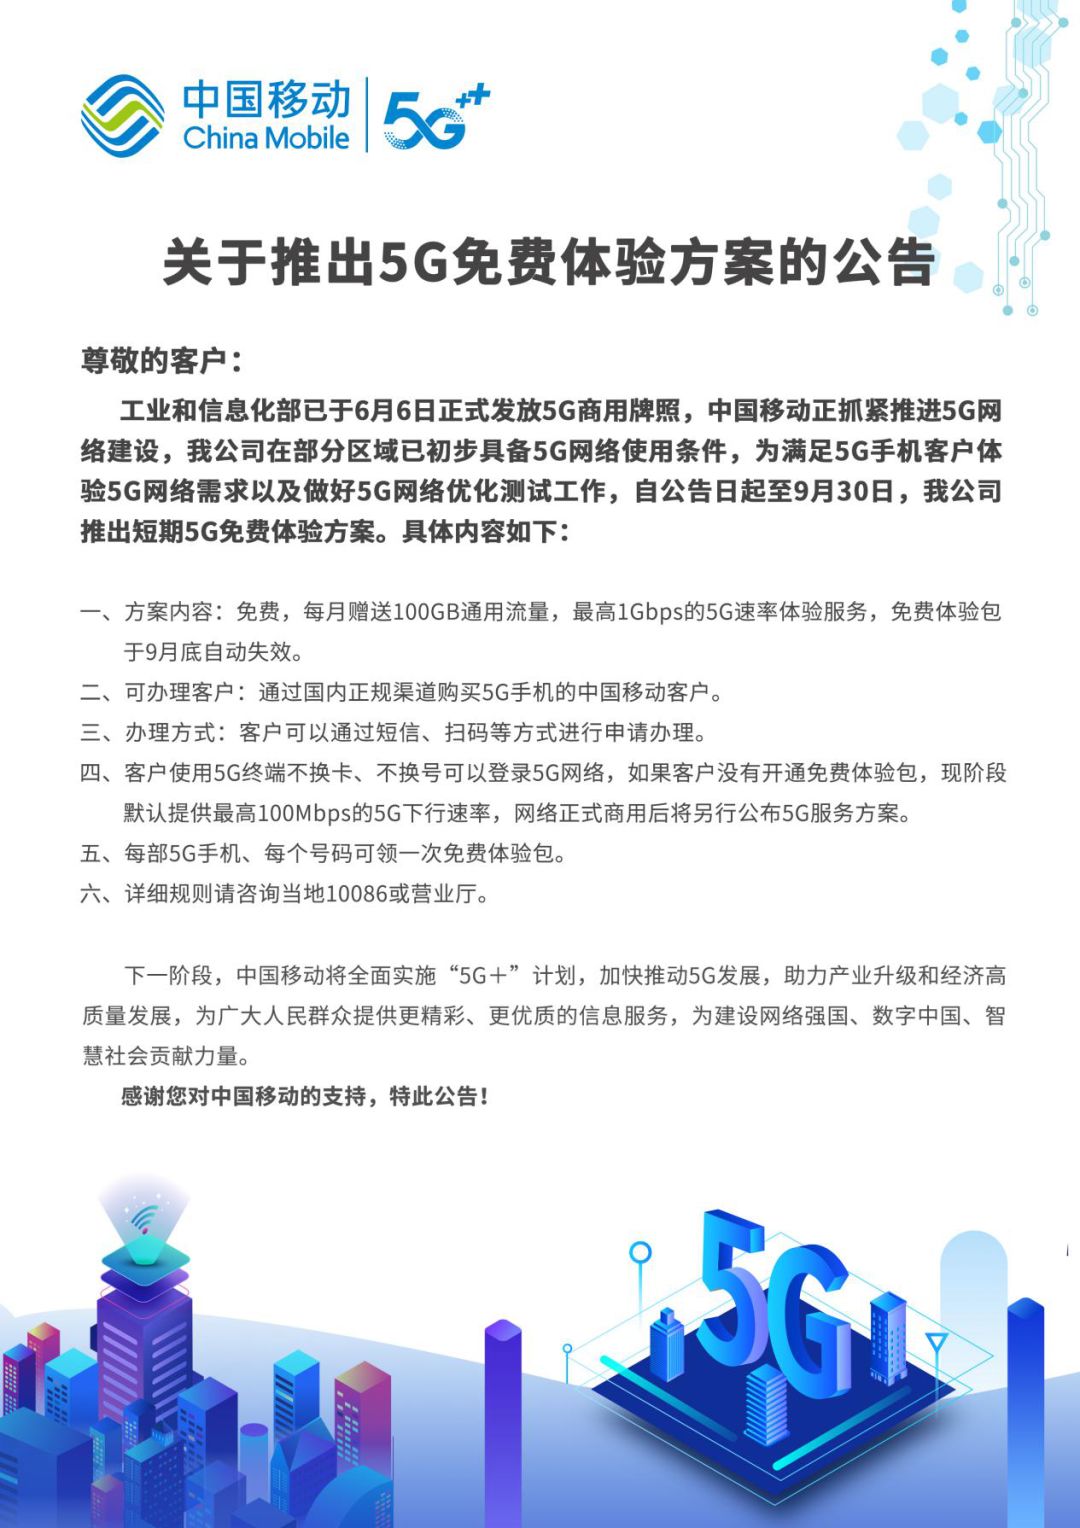 中国移动5G体验活动延期至10月底  100G流量还能免费领